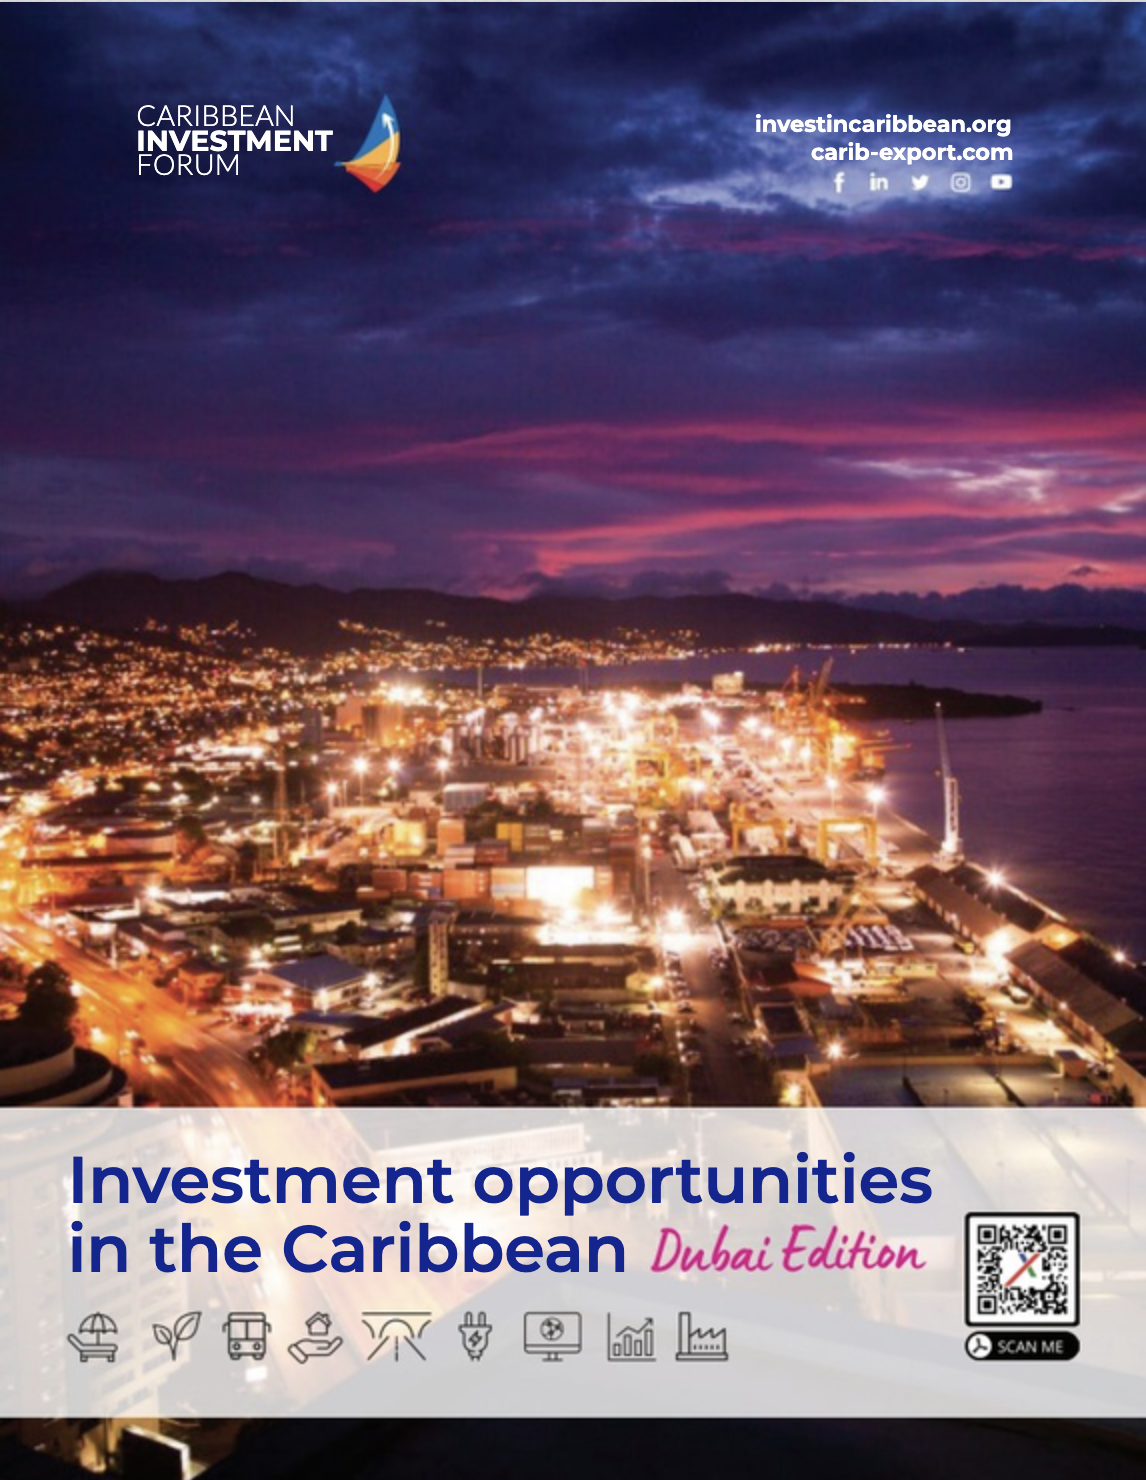 Investeringsmogelijkheden in het Caribisch gebied – Dubai Edition